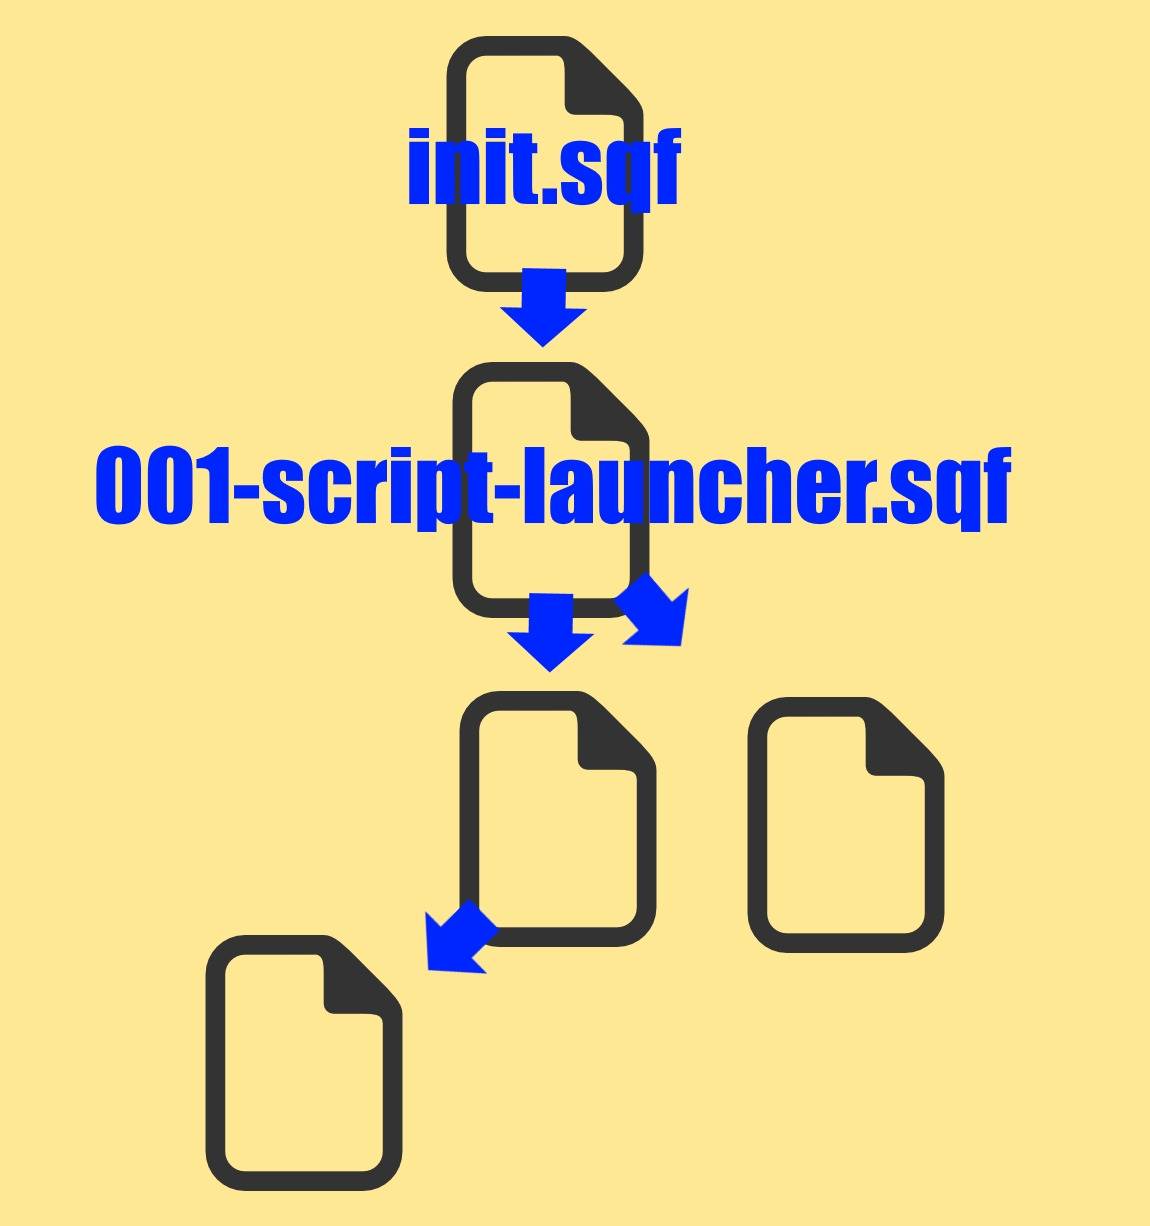 arma 2 file initialization structure